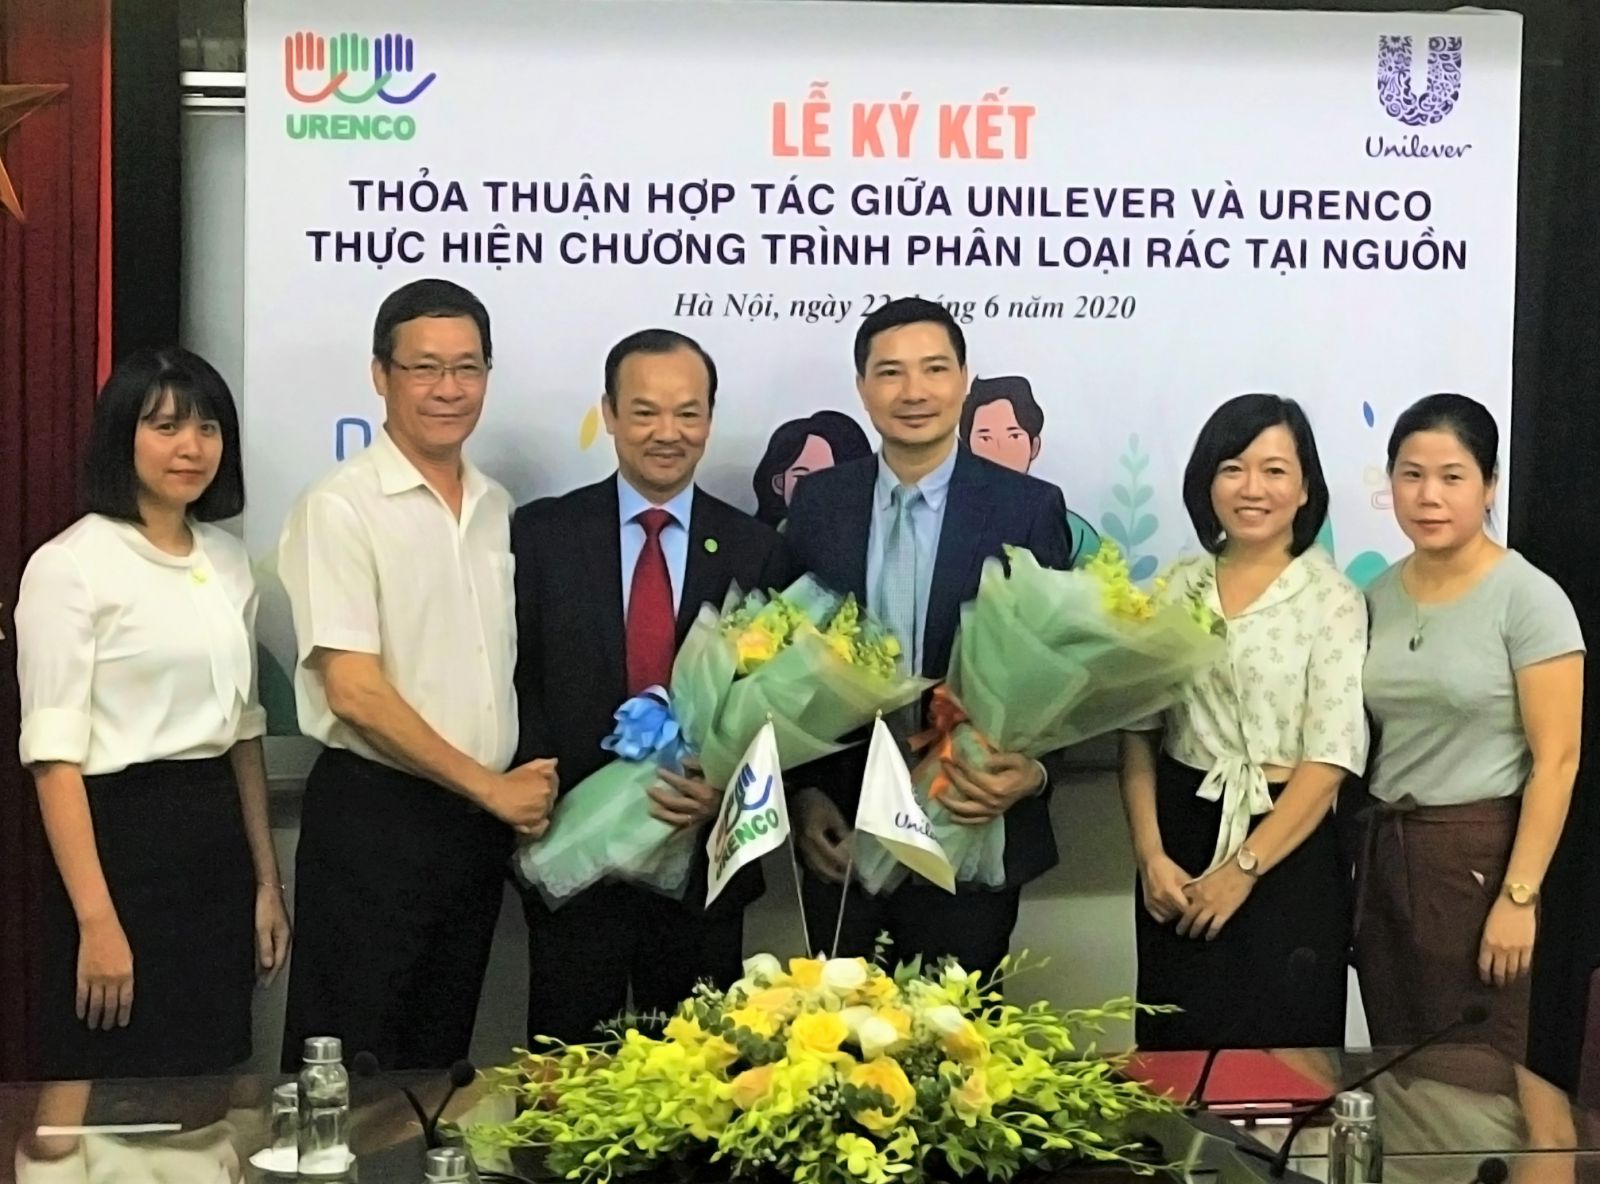  Ông Nguyễn Hữu Tiến (URENCO) và ông Đỗ Thái Vương (Unilever) cùng ký kếtp/phê chuẩn chương trình hợp tác hành động năm 2020